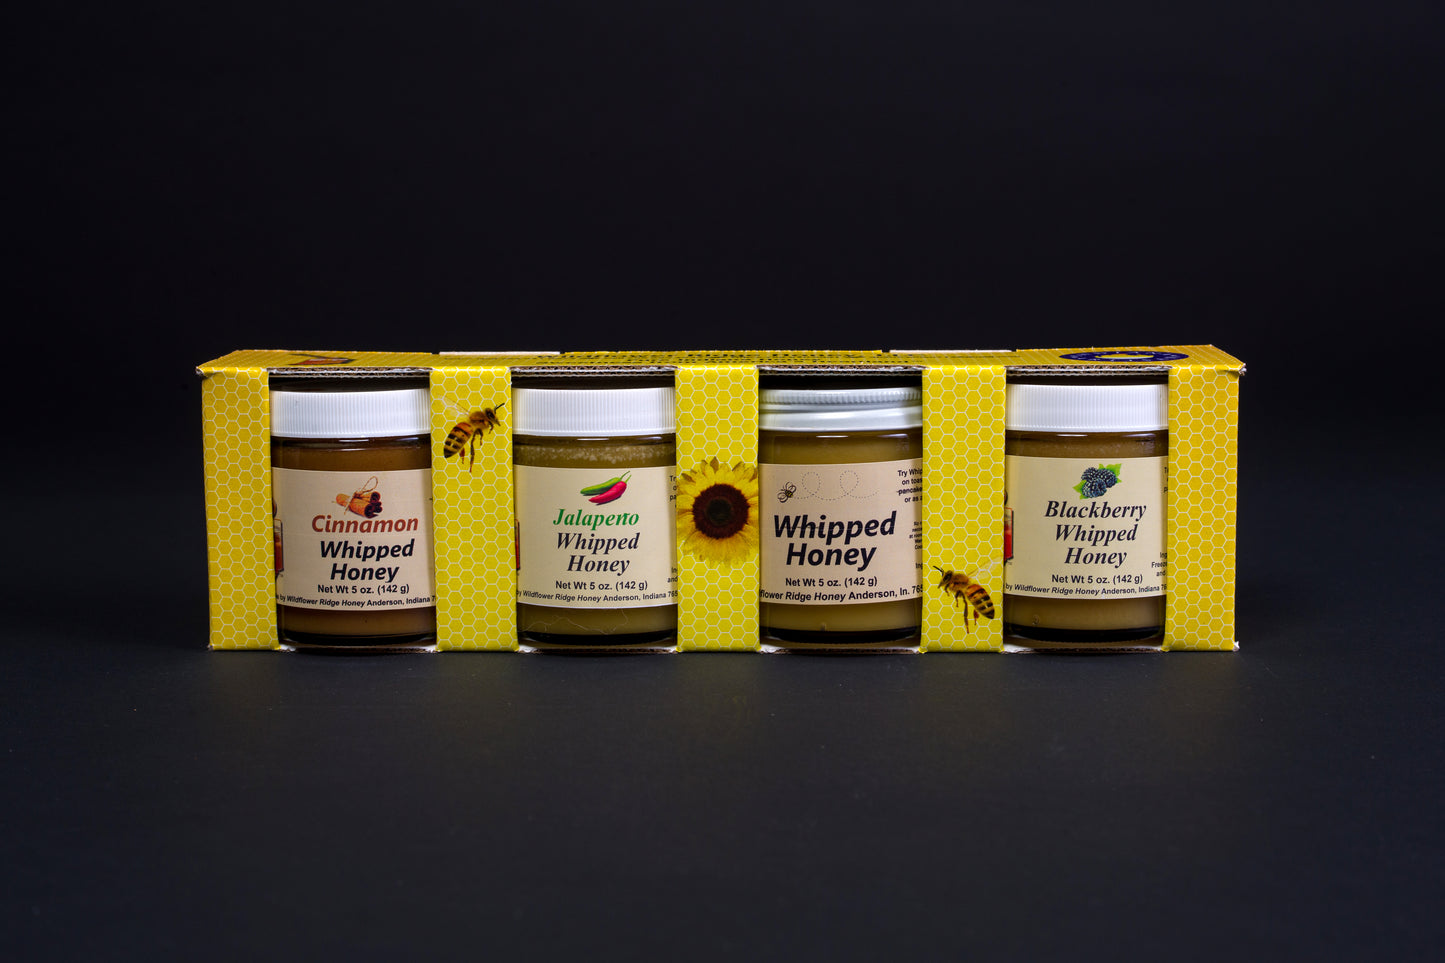 4 Pack, 5 oz. Jars of Whipped Honey, Asst. Flavors